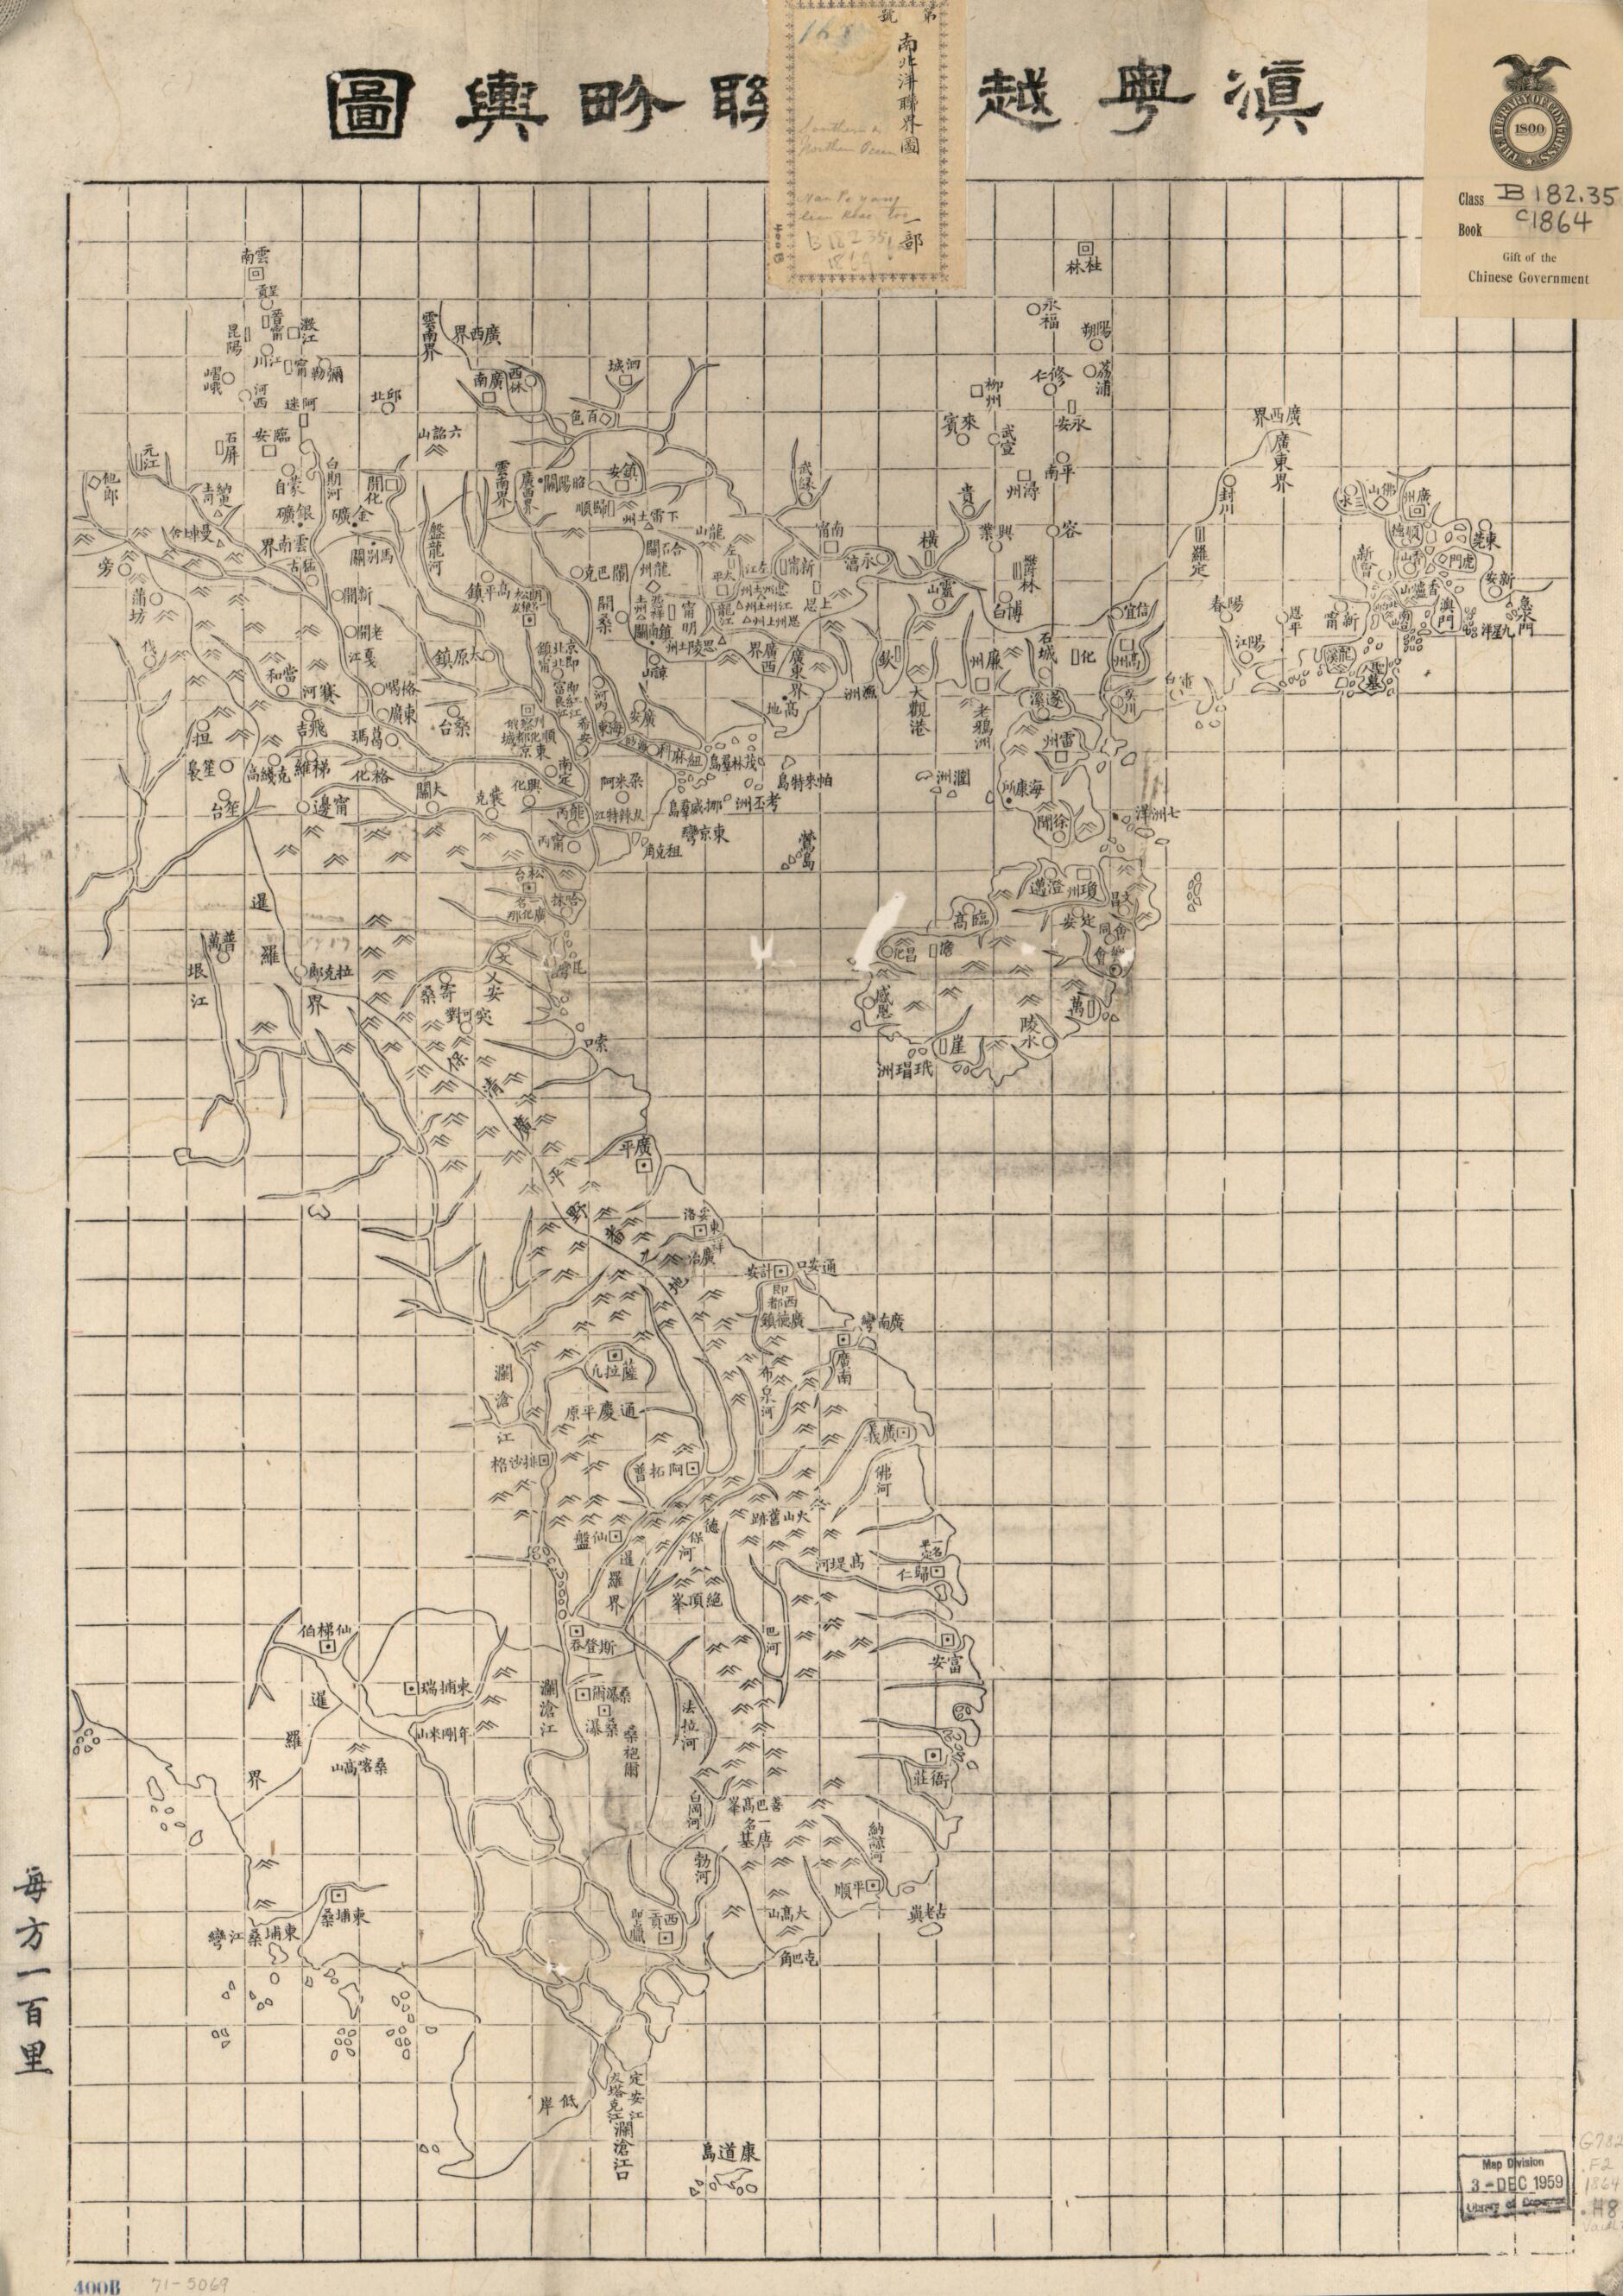 This old map of Dian Yue Yuenan Lian Jie Yu Tu. (滇粤,越南聯界與圖, China and Vietnam Border Map) from 1870 was created by  Hubei Sheng (China). Guan Shu Ju in 1870